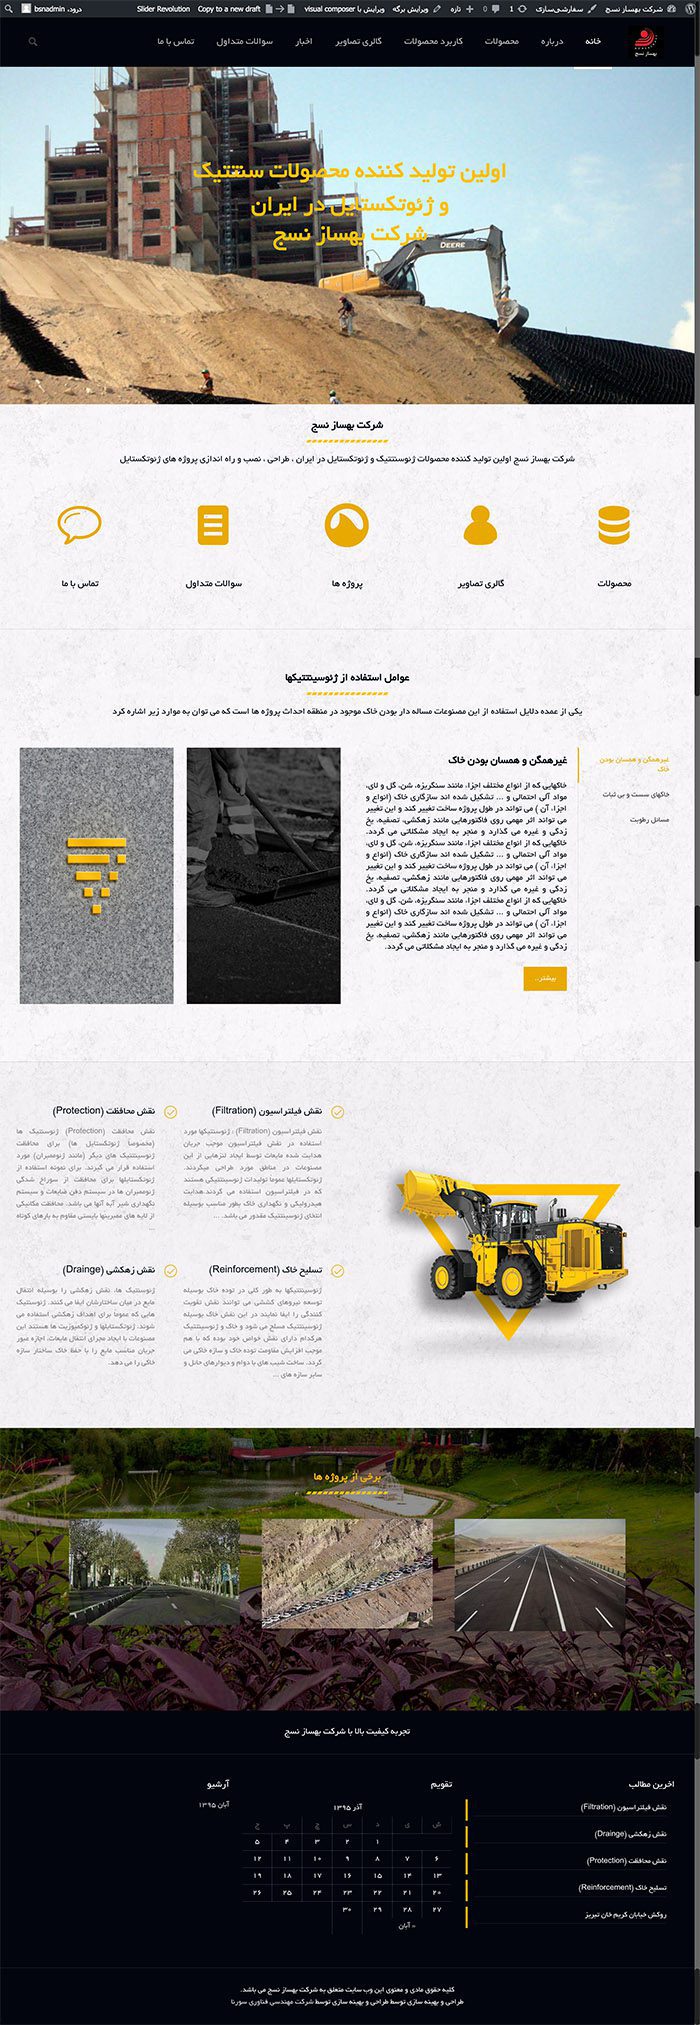 طراحی سایت شرکت بهساز نسج توسط شرکت طراحی سایت سورنا در کرمان